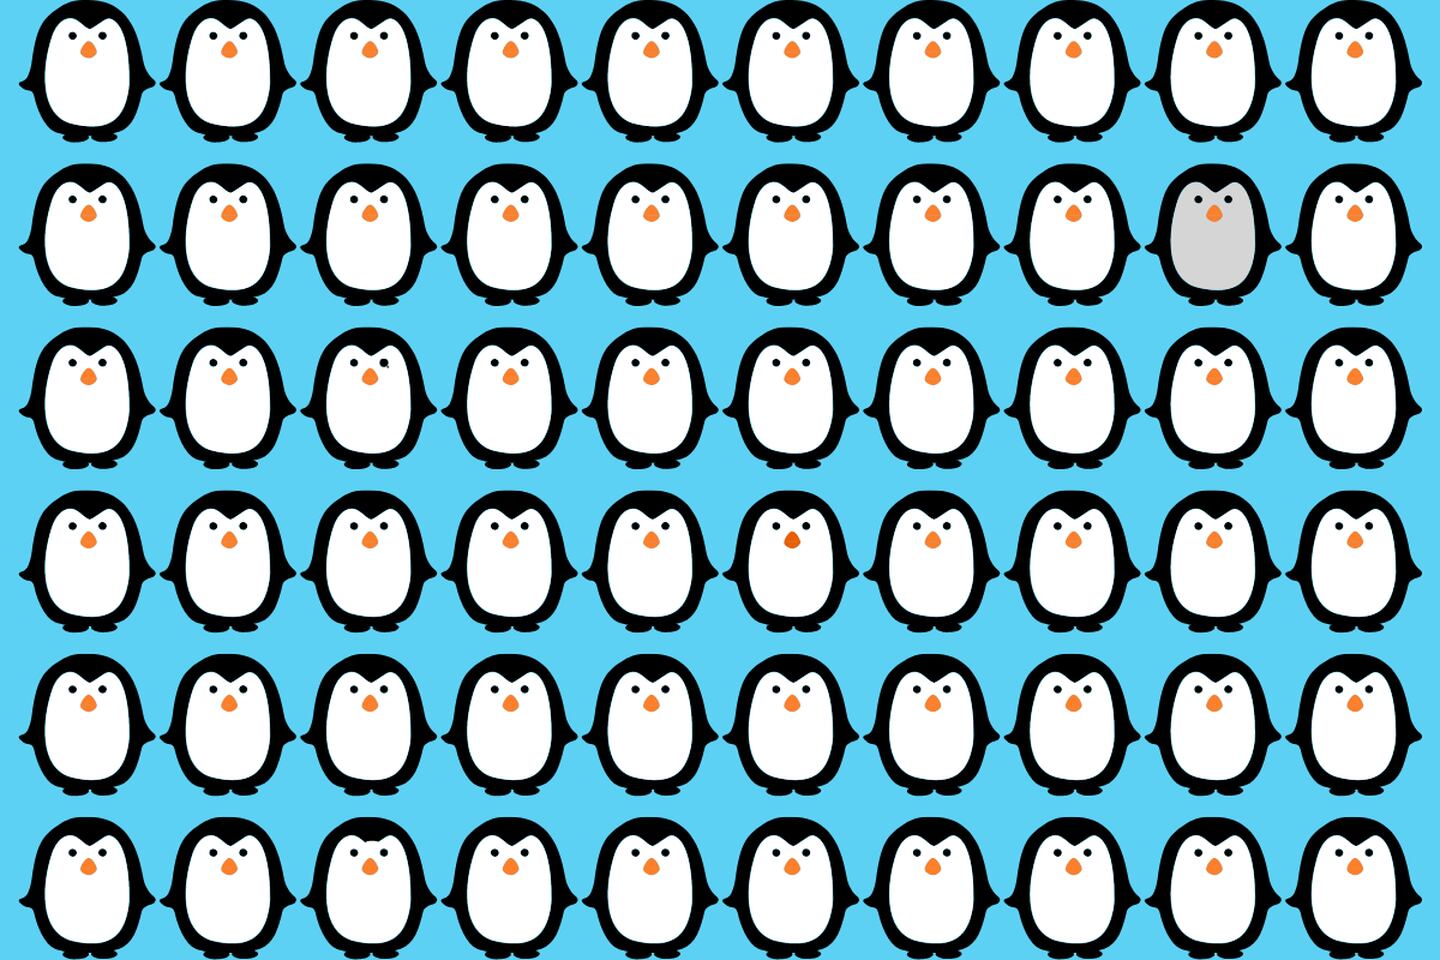 En este test visual hay muchos pingüinos, y entre ellos cuatro son diferentes.